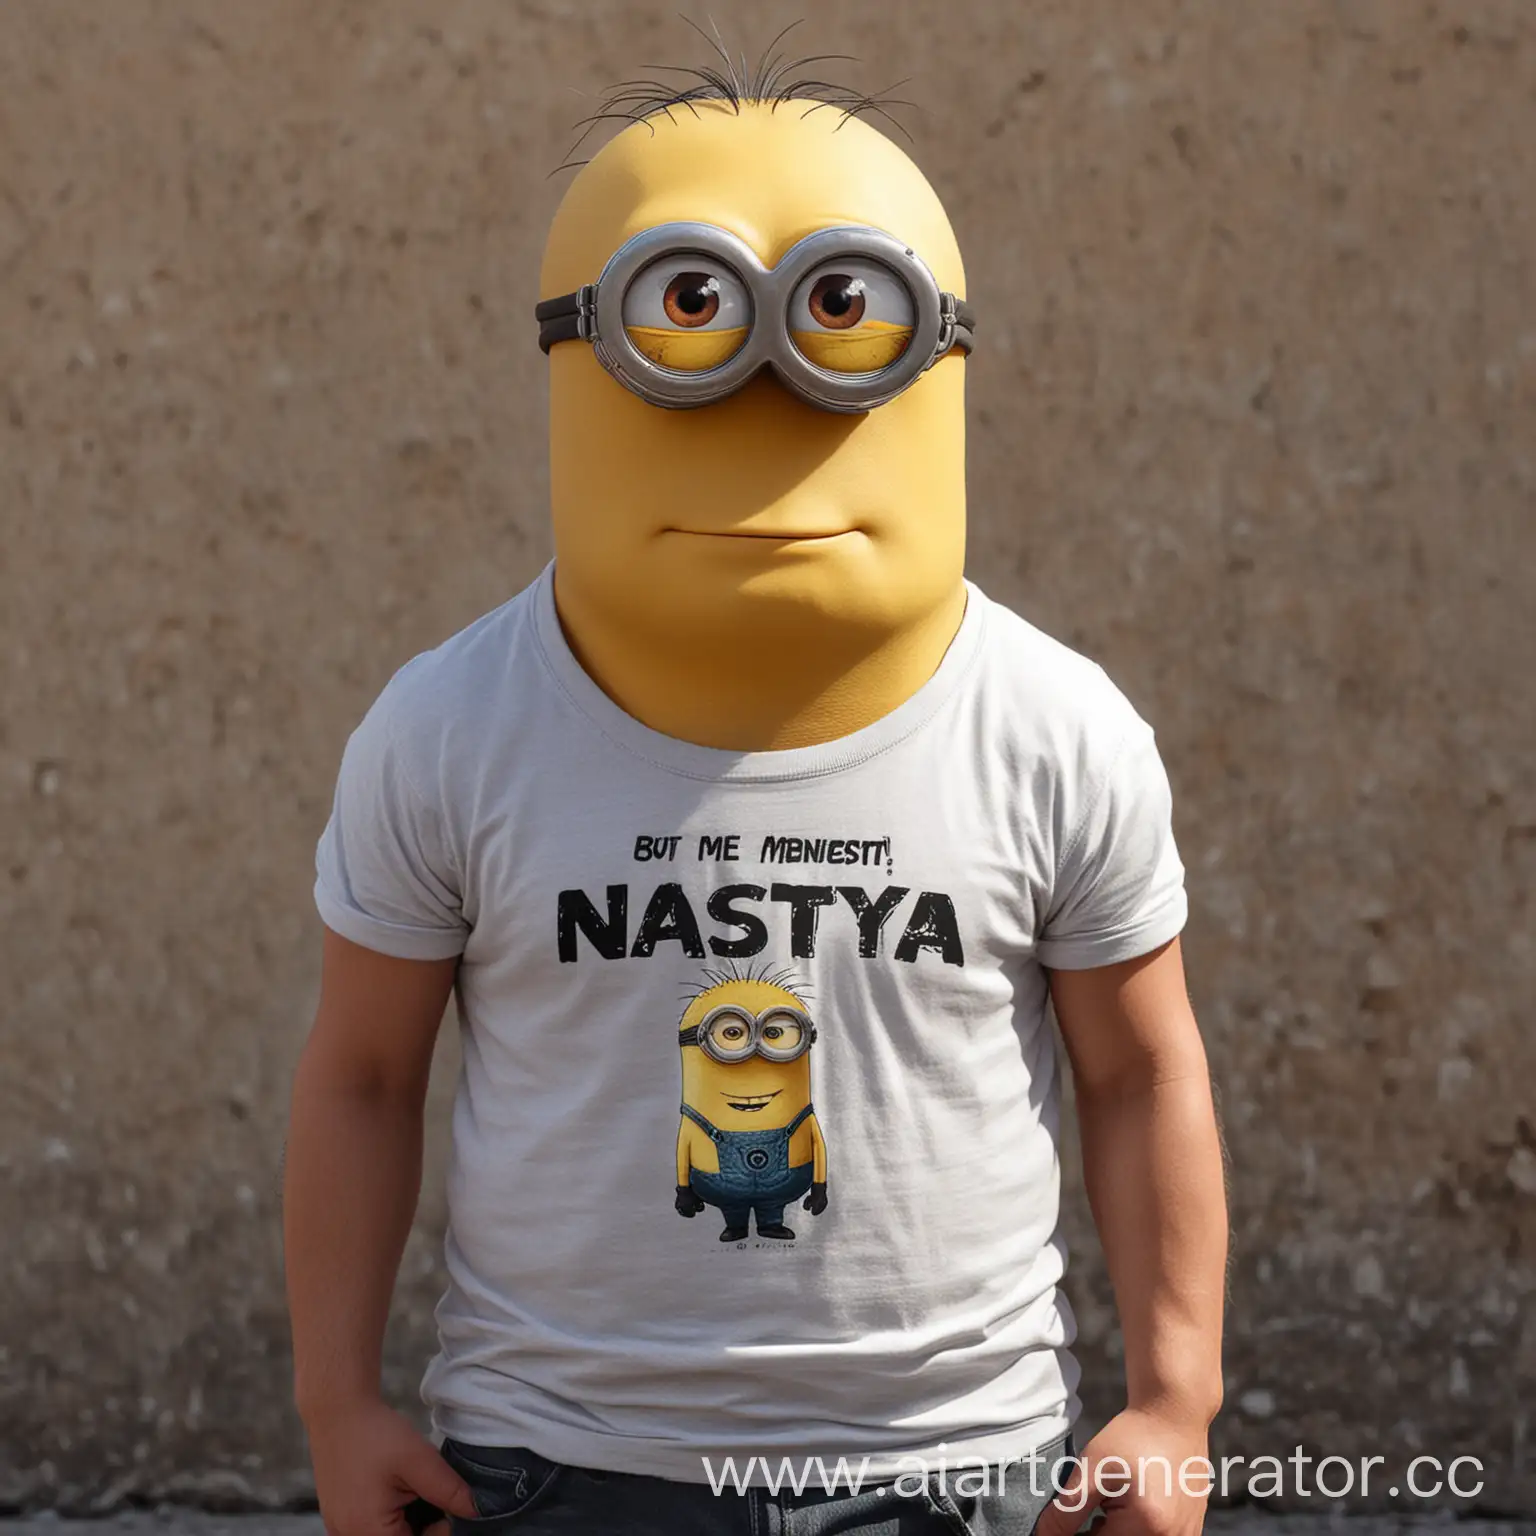 Накаченный большой миньон мужского пола с футболкой, на которой написано Настя
